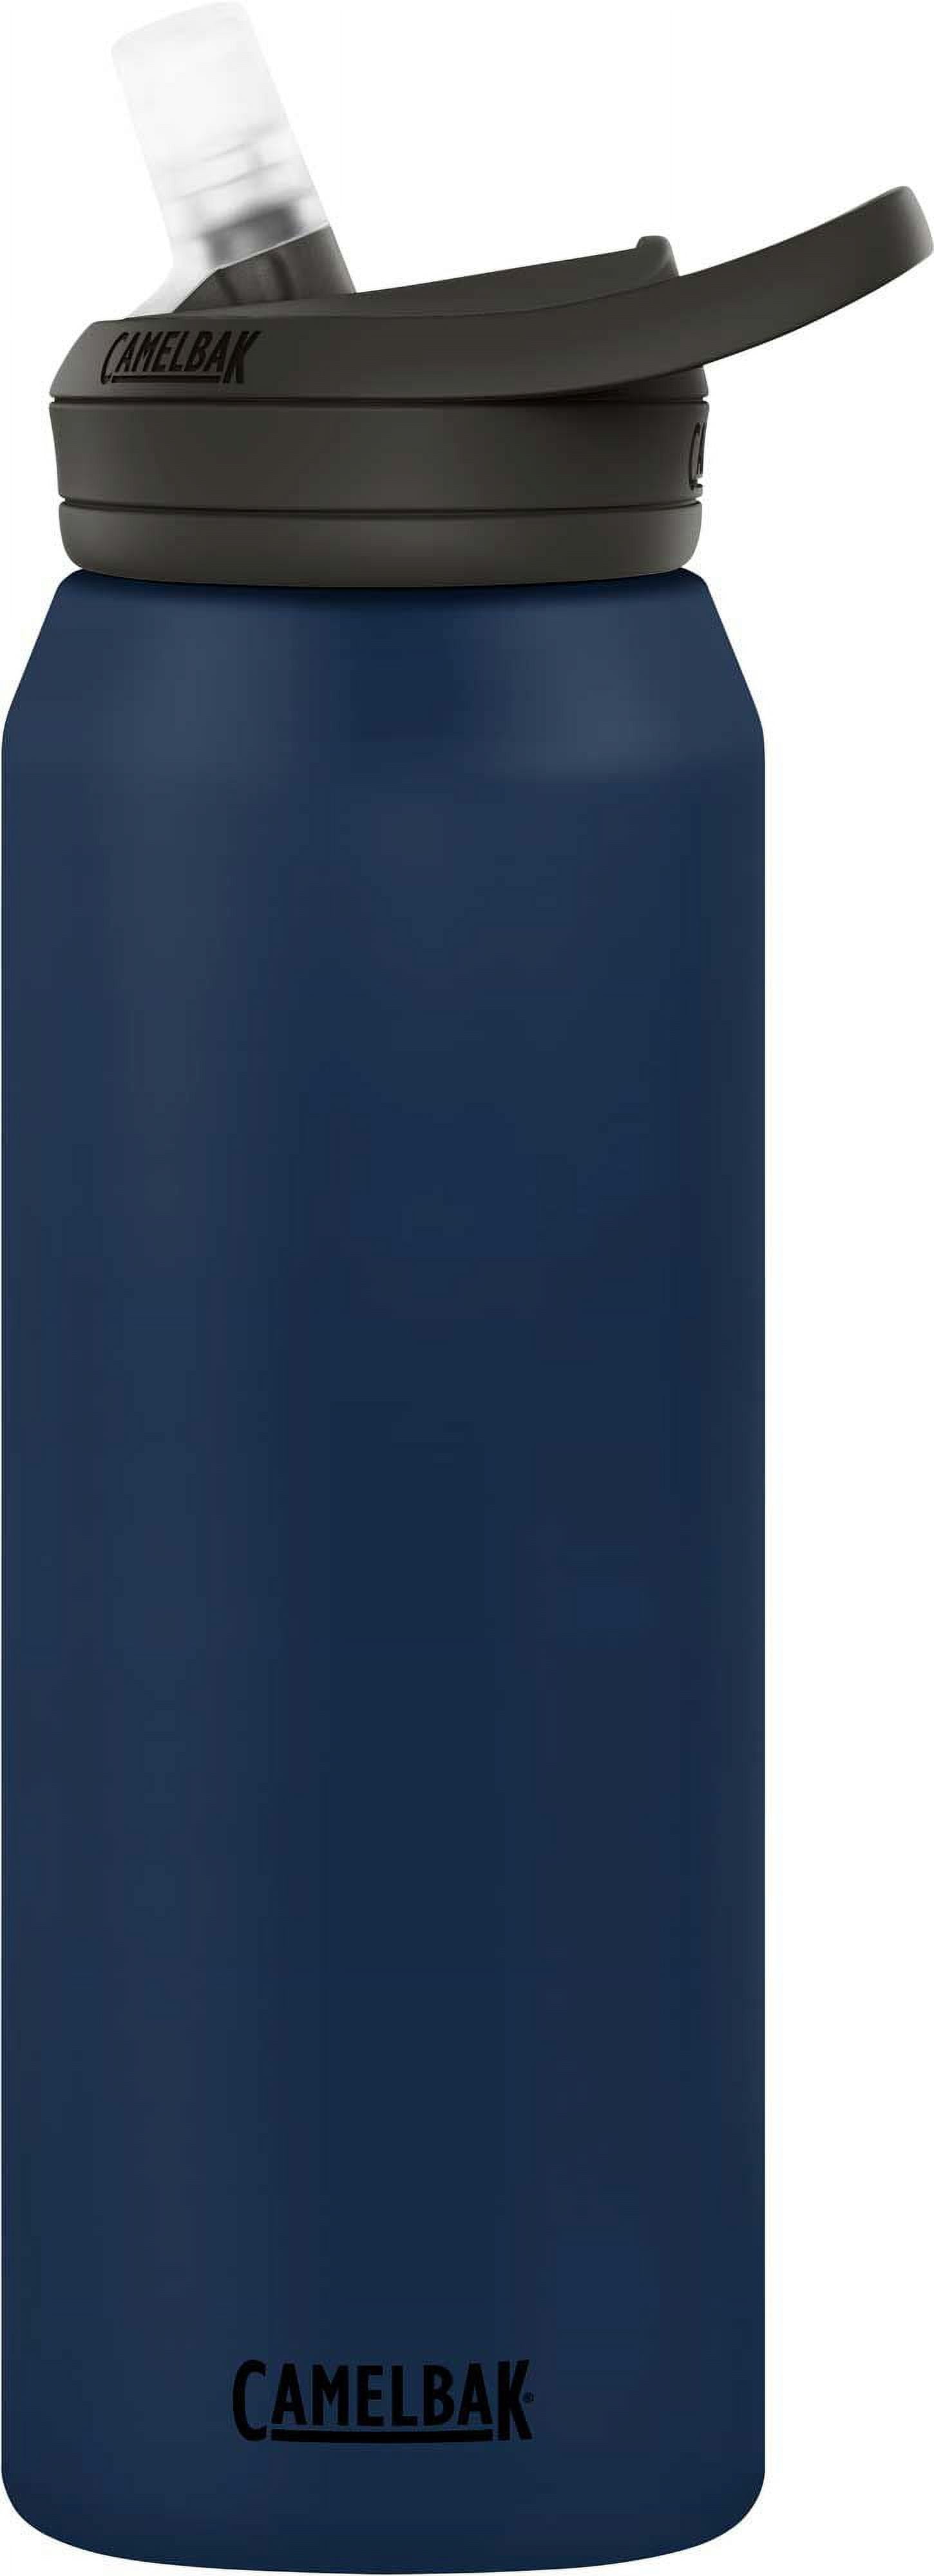 Camelbak Eddy+ Stainless Steel Bottle - Blue, 32 oz - Kroger